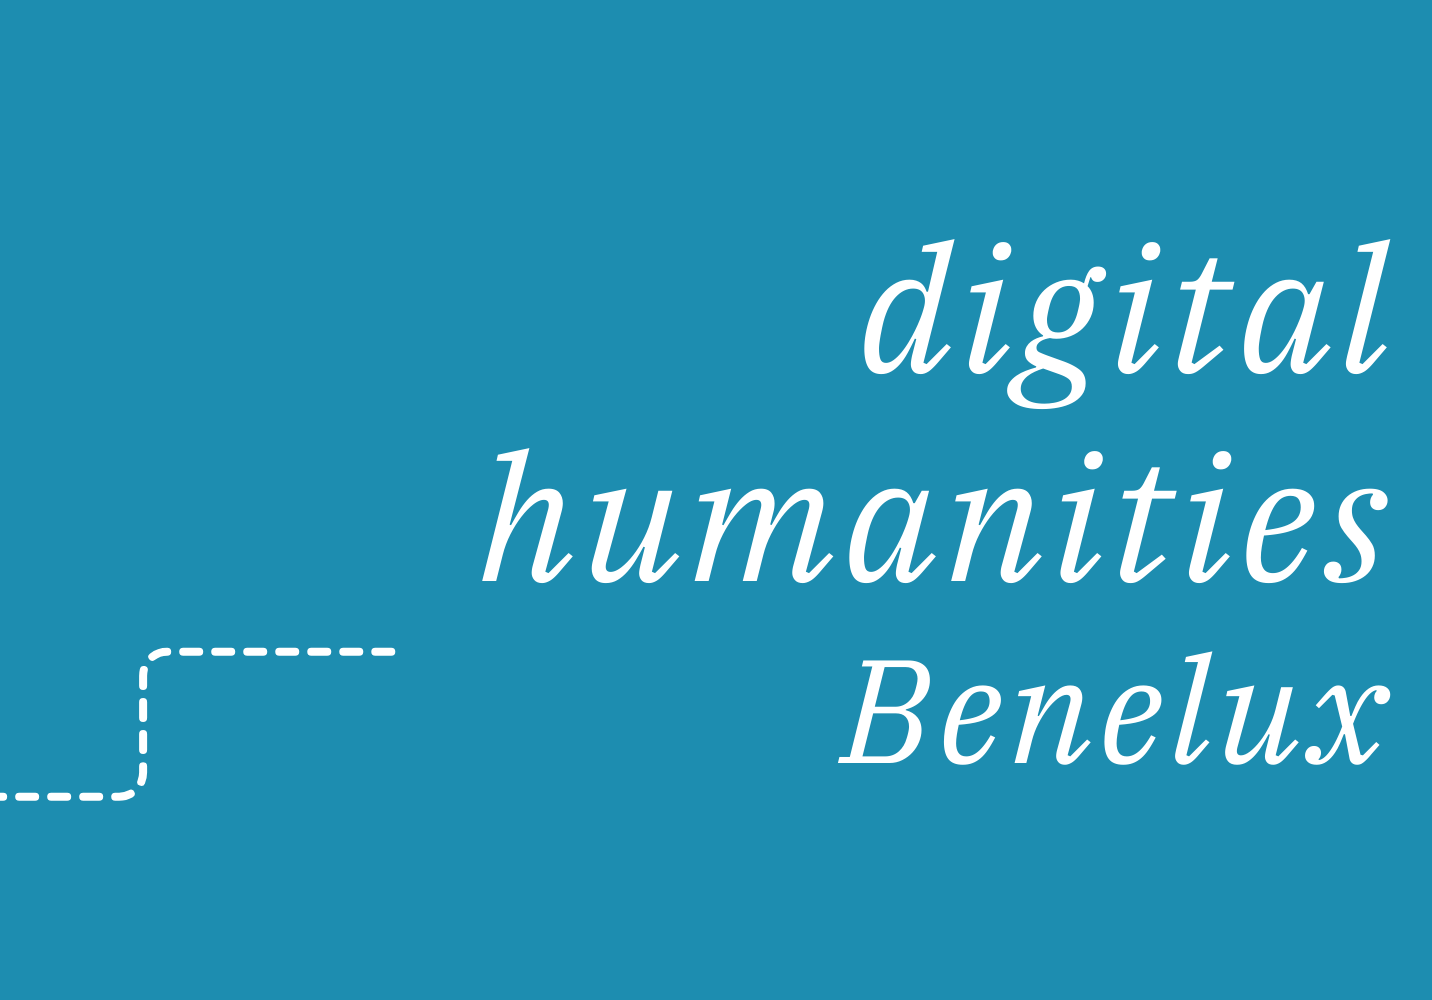 Logo de la 11e édition de Digital Humanities Benelux 